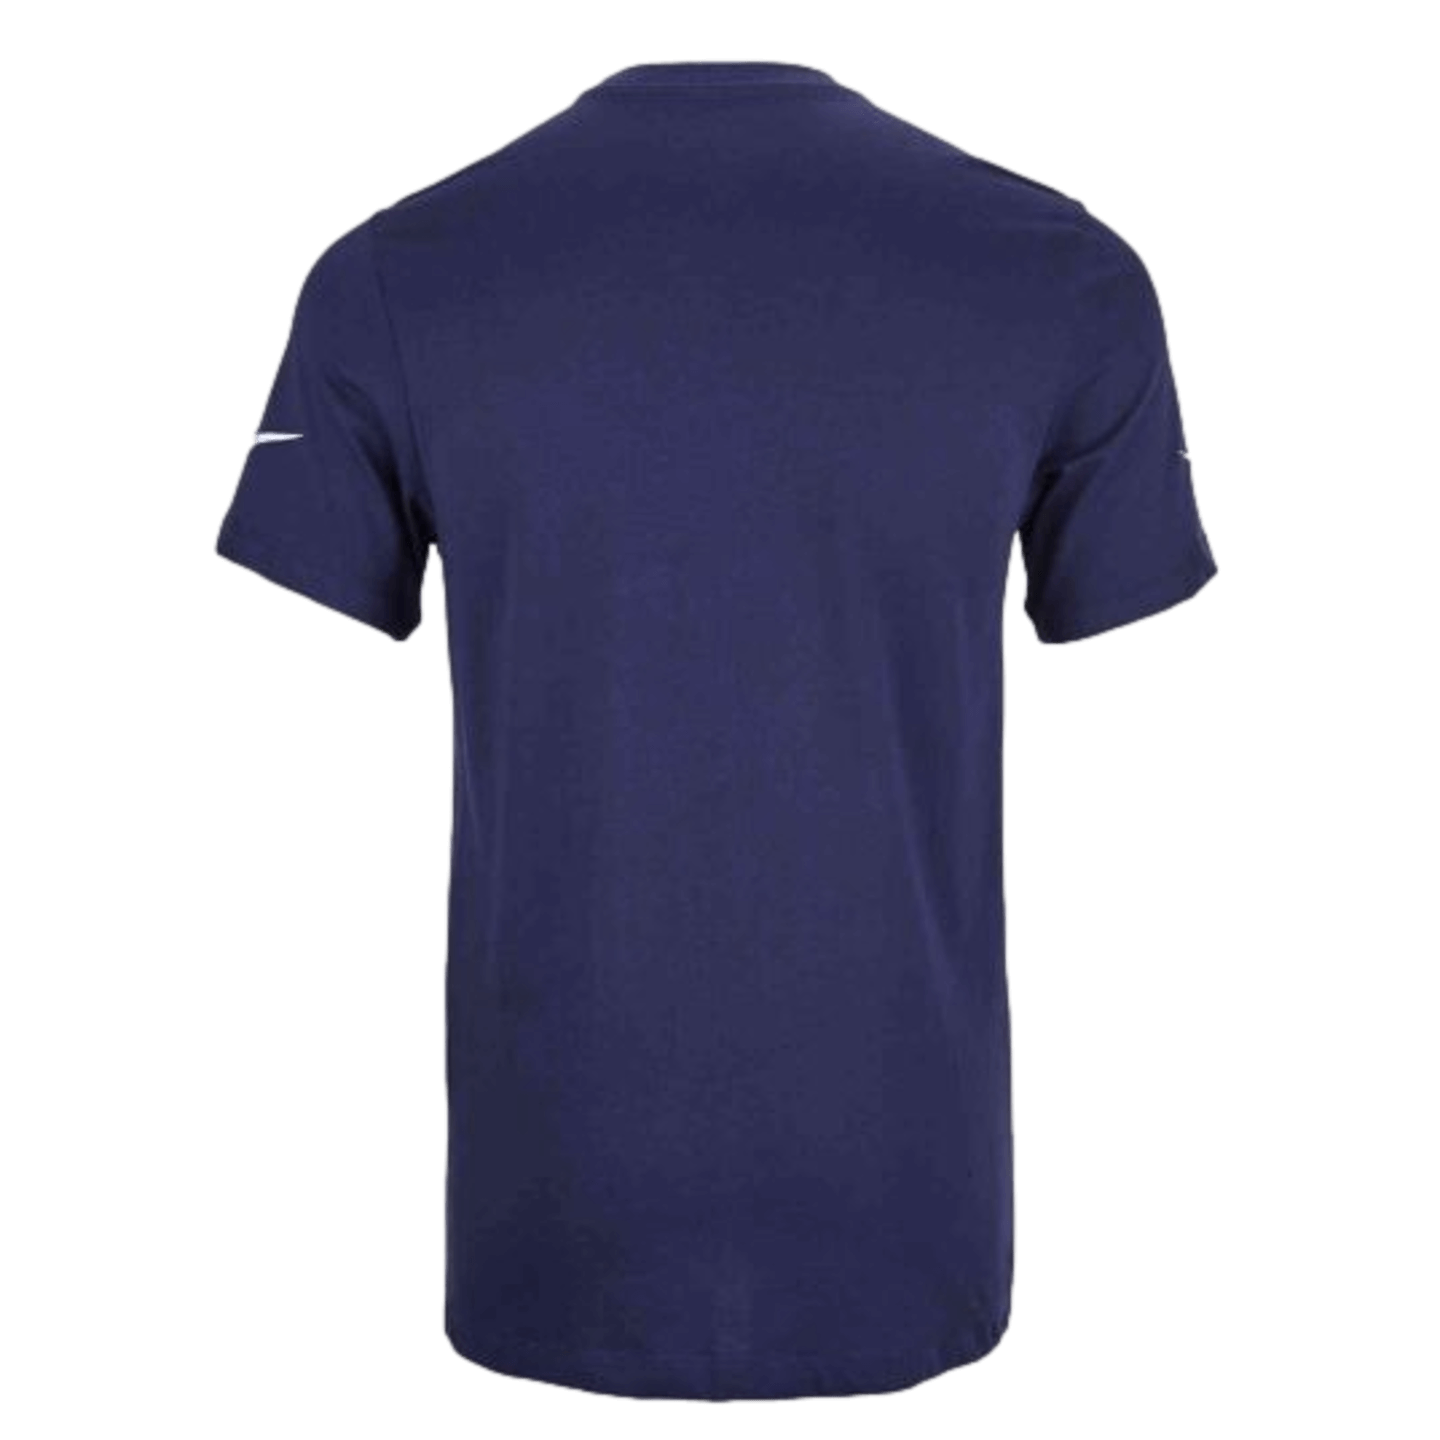 Camiseta con gancho del Tottenham de Nike